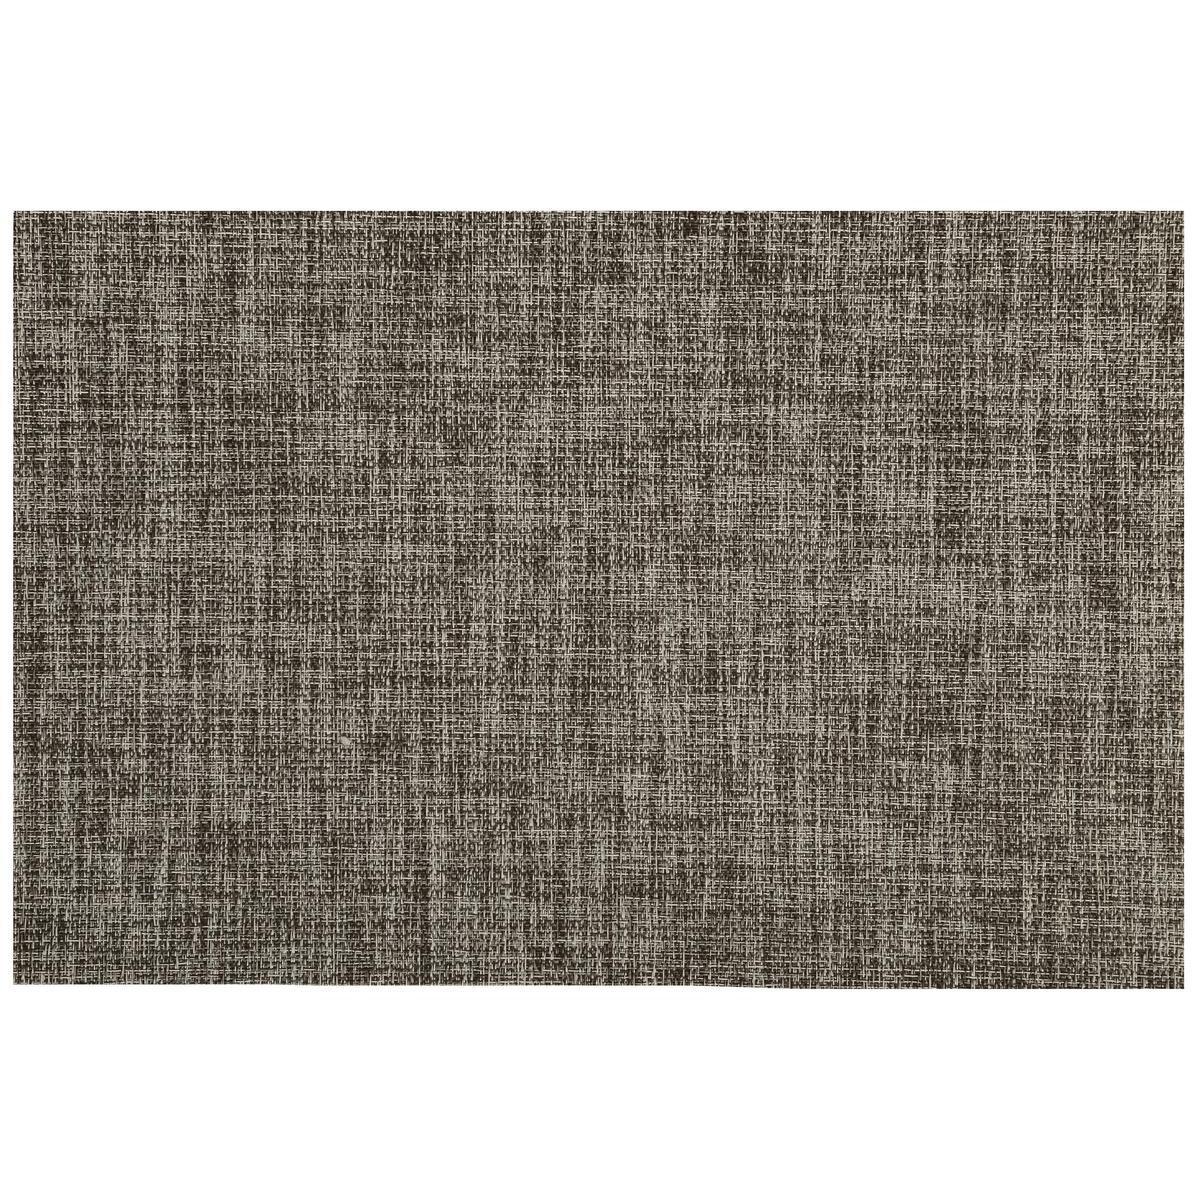 Set de table - Vinyle Polyester - 30 x 46 cm - Gris